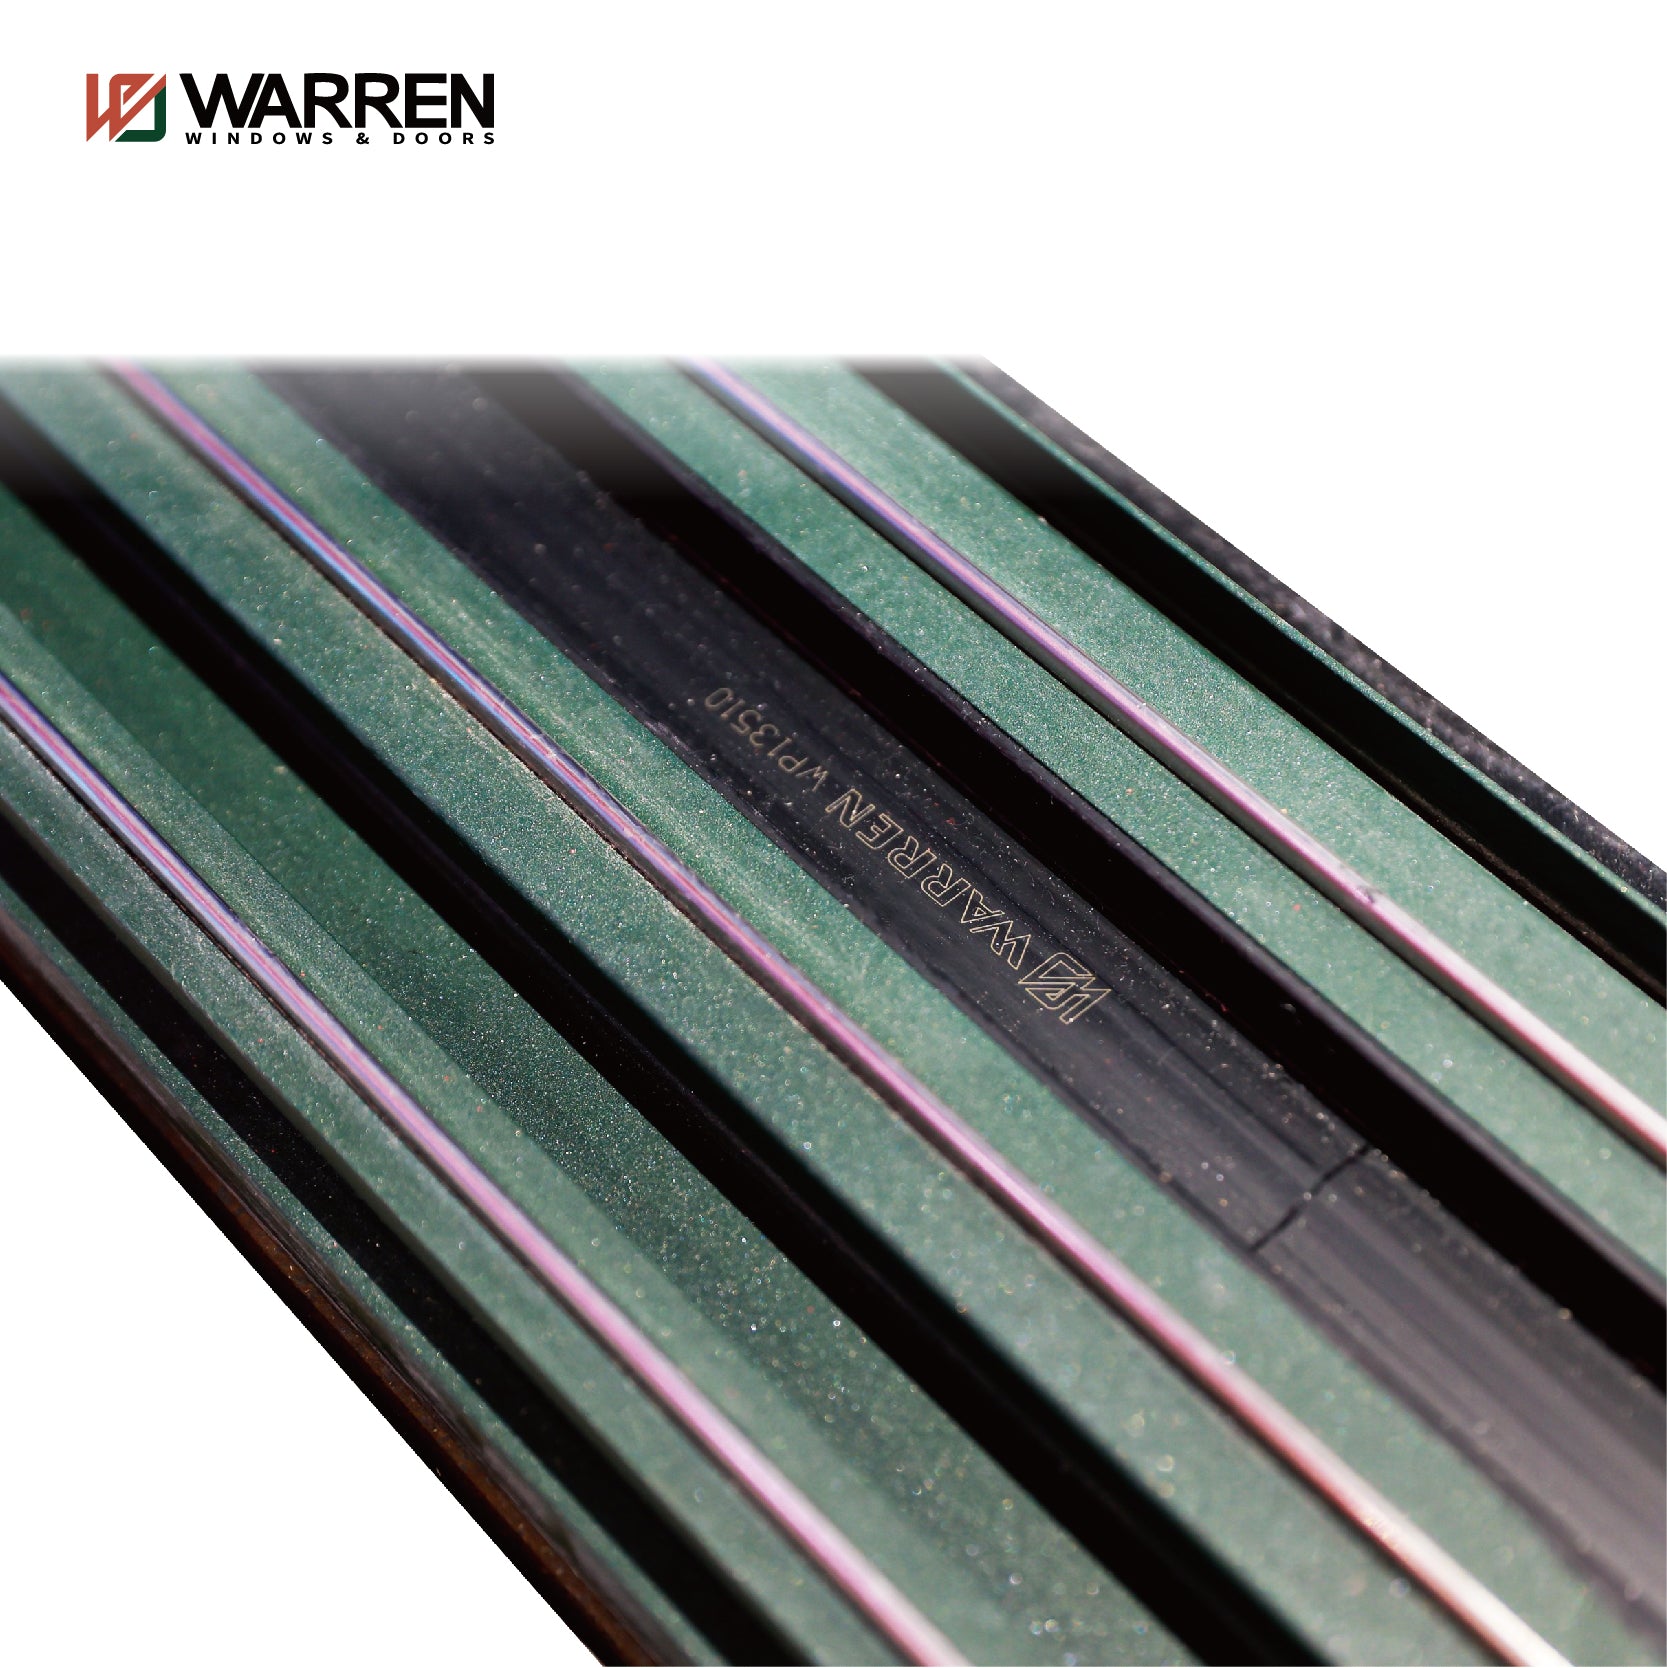 Warren Factory Sale  New Products Aluminium Sliding Door Outdoor Commercial Sliding Doors